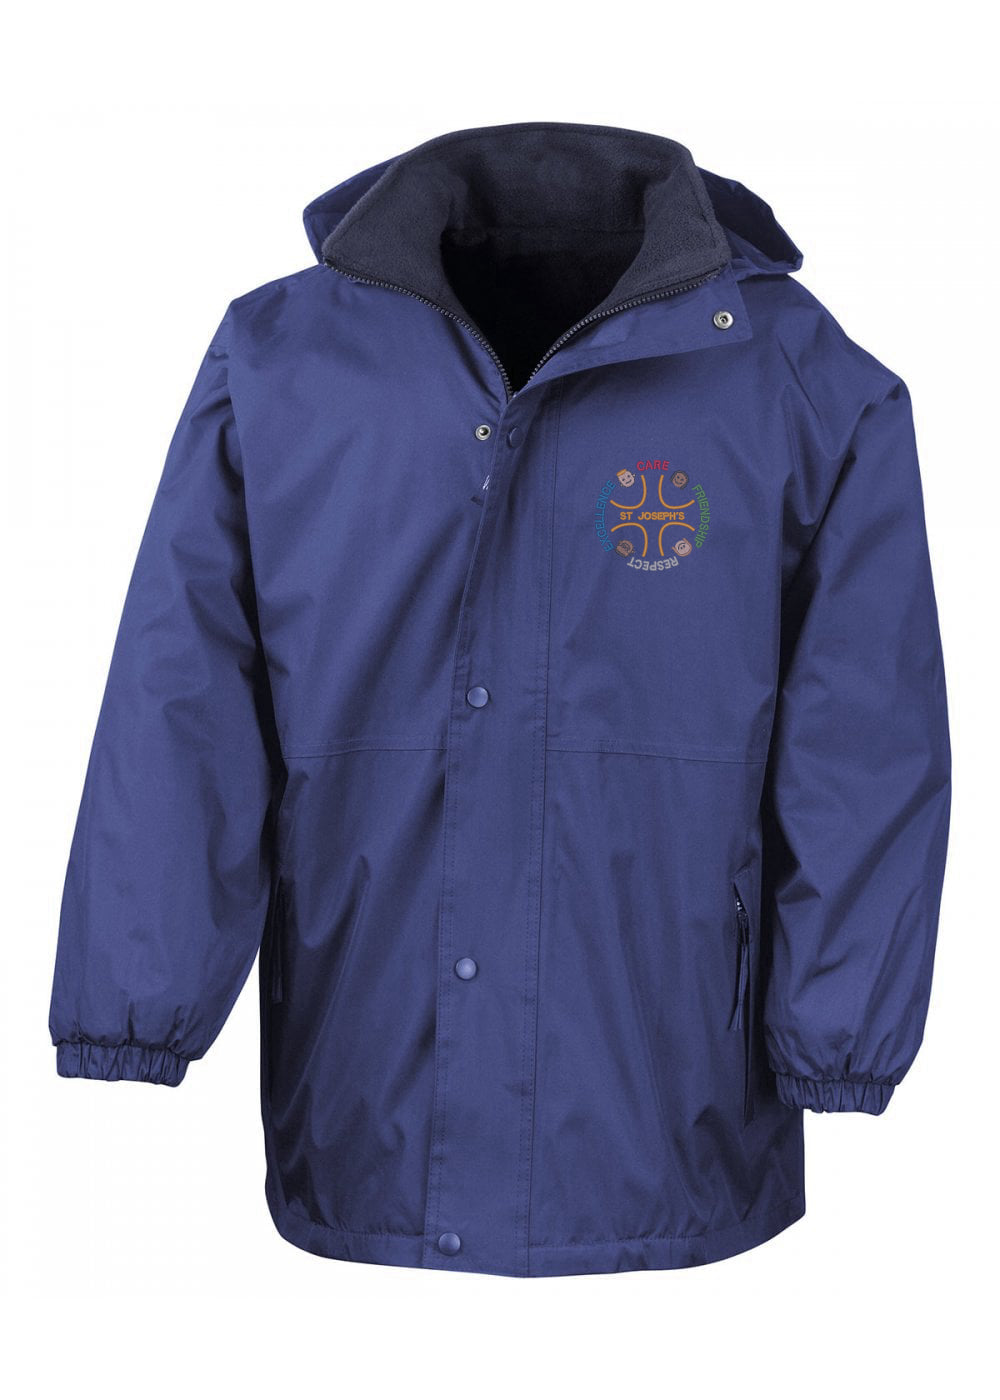 St. Josephs Blackhall Royal Blue Winter Storm Jacket